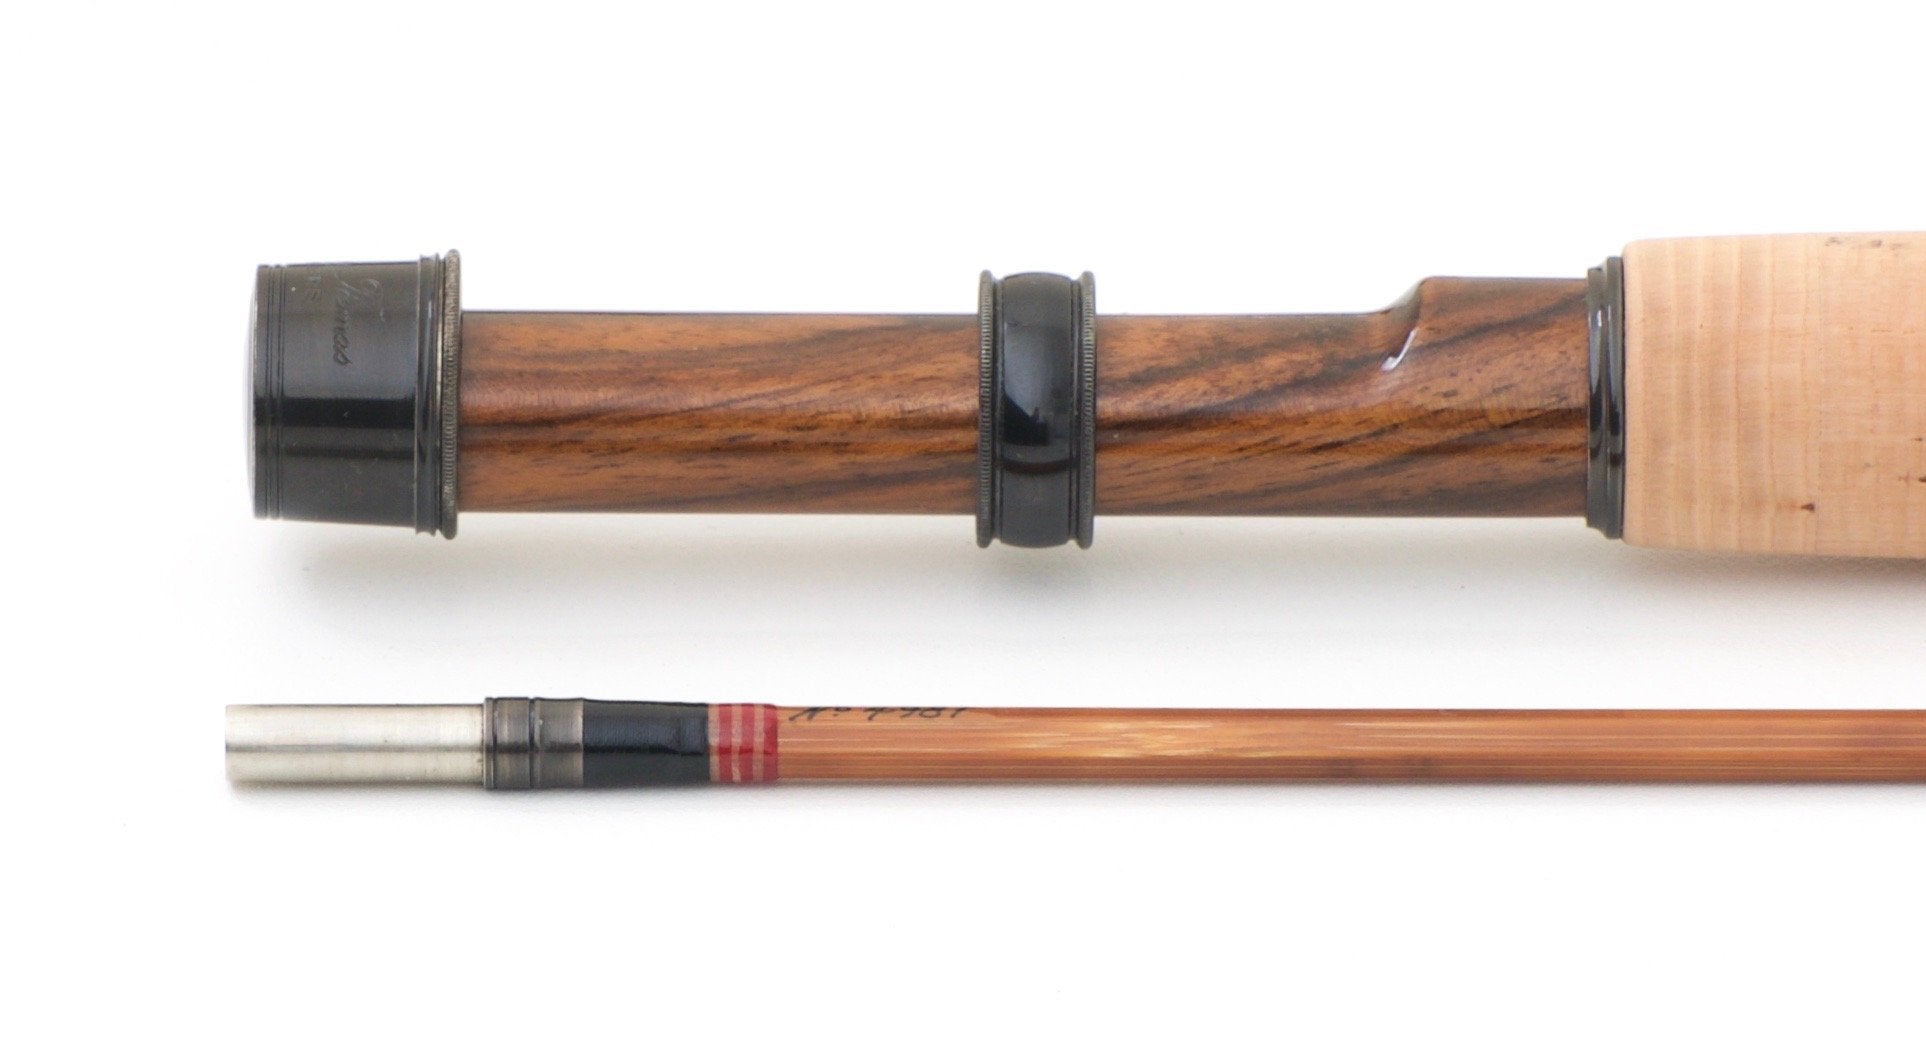 Thomas & Thomas Classic Bamboo Rod 6'6 2/1 #4 - Spinoza Rod Company